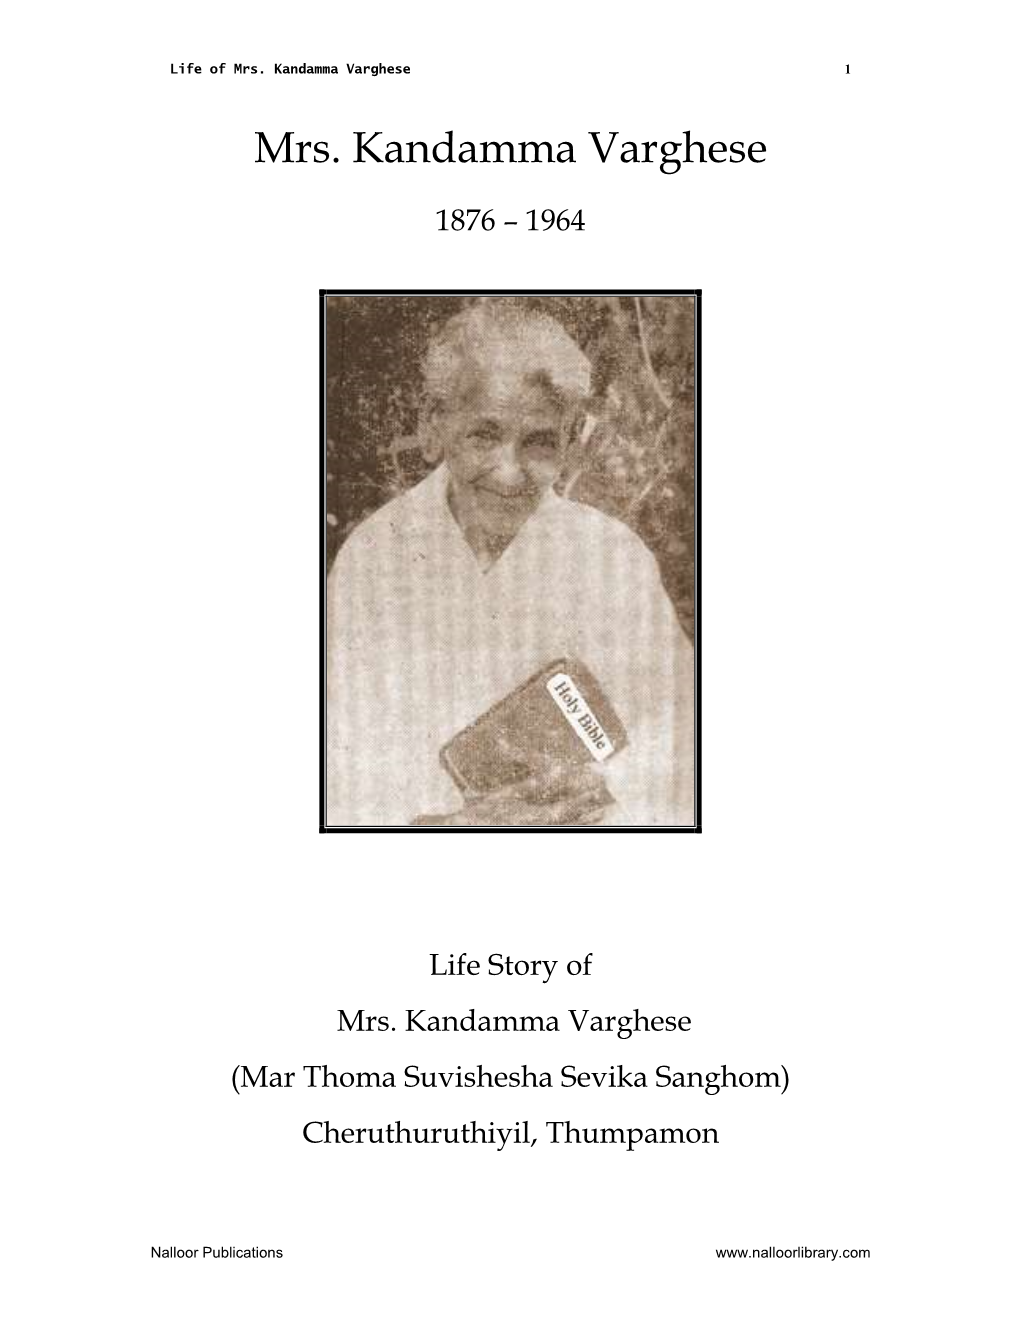 Mrs. Kandamma Varghese 1